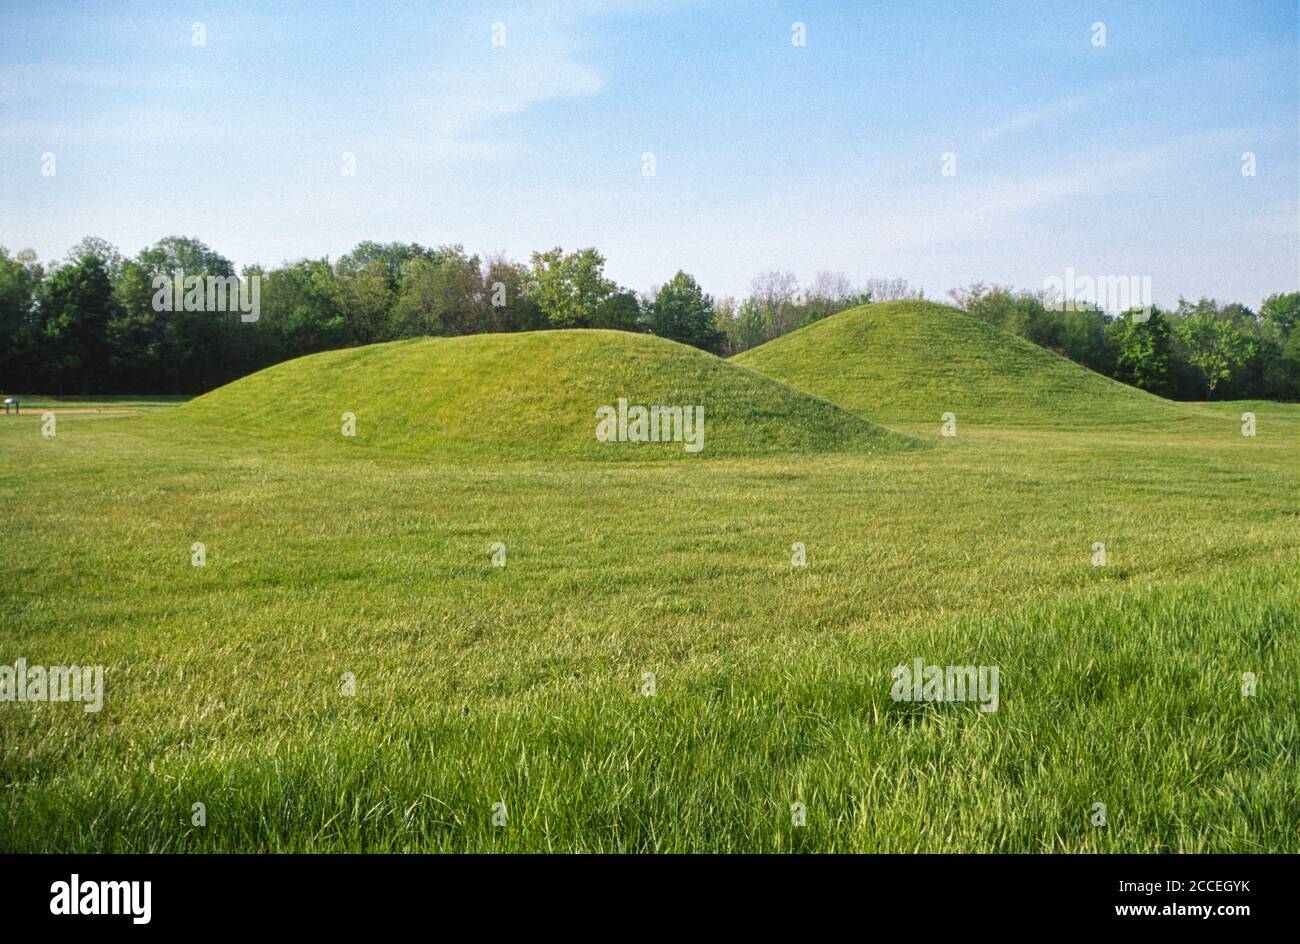 Hentering Mounds, Parc historique national de la culture Hopewell, Chillicothe, Ohio, États-Unis Banque D'Images